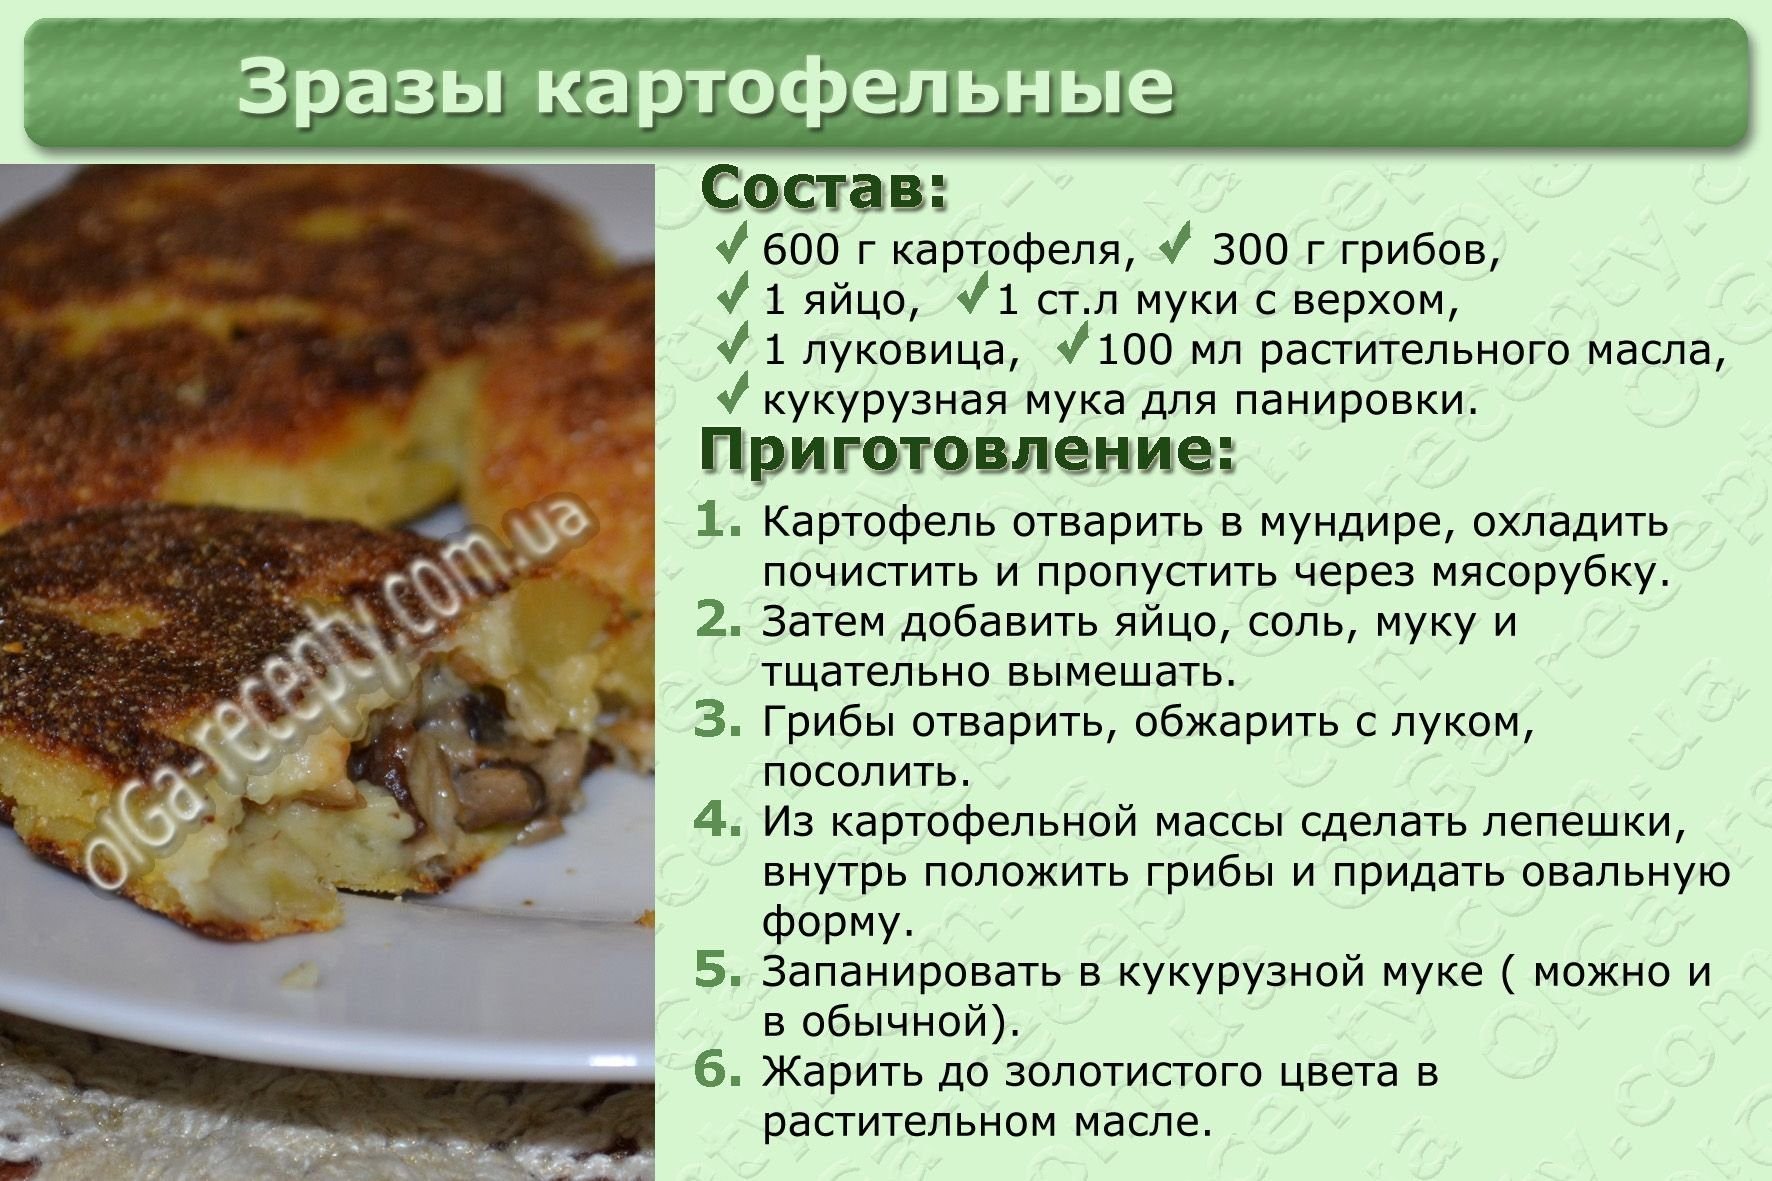 Блюда из теста технология приготовления. Кулинария рецепты с фотографиями. Рецепты блюд с описанием приготовления. Рецепты в картинках. Рецепты в картинках с описанием.